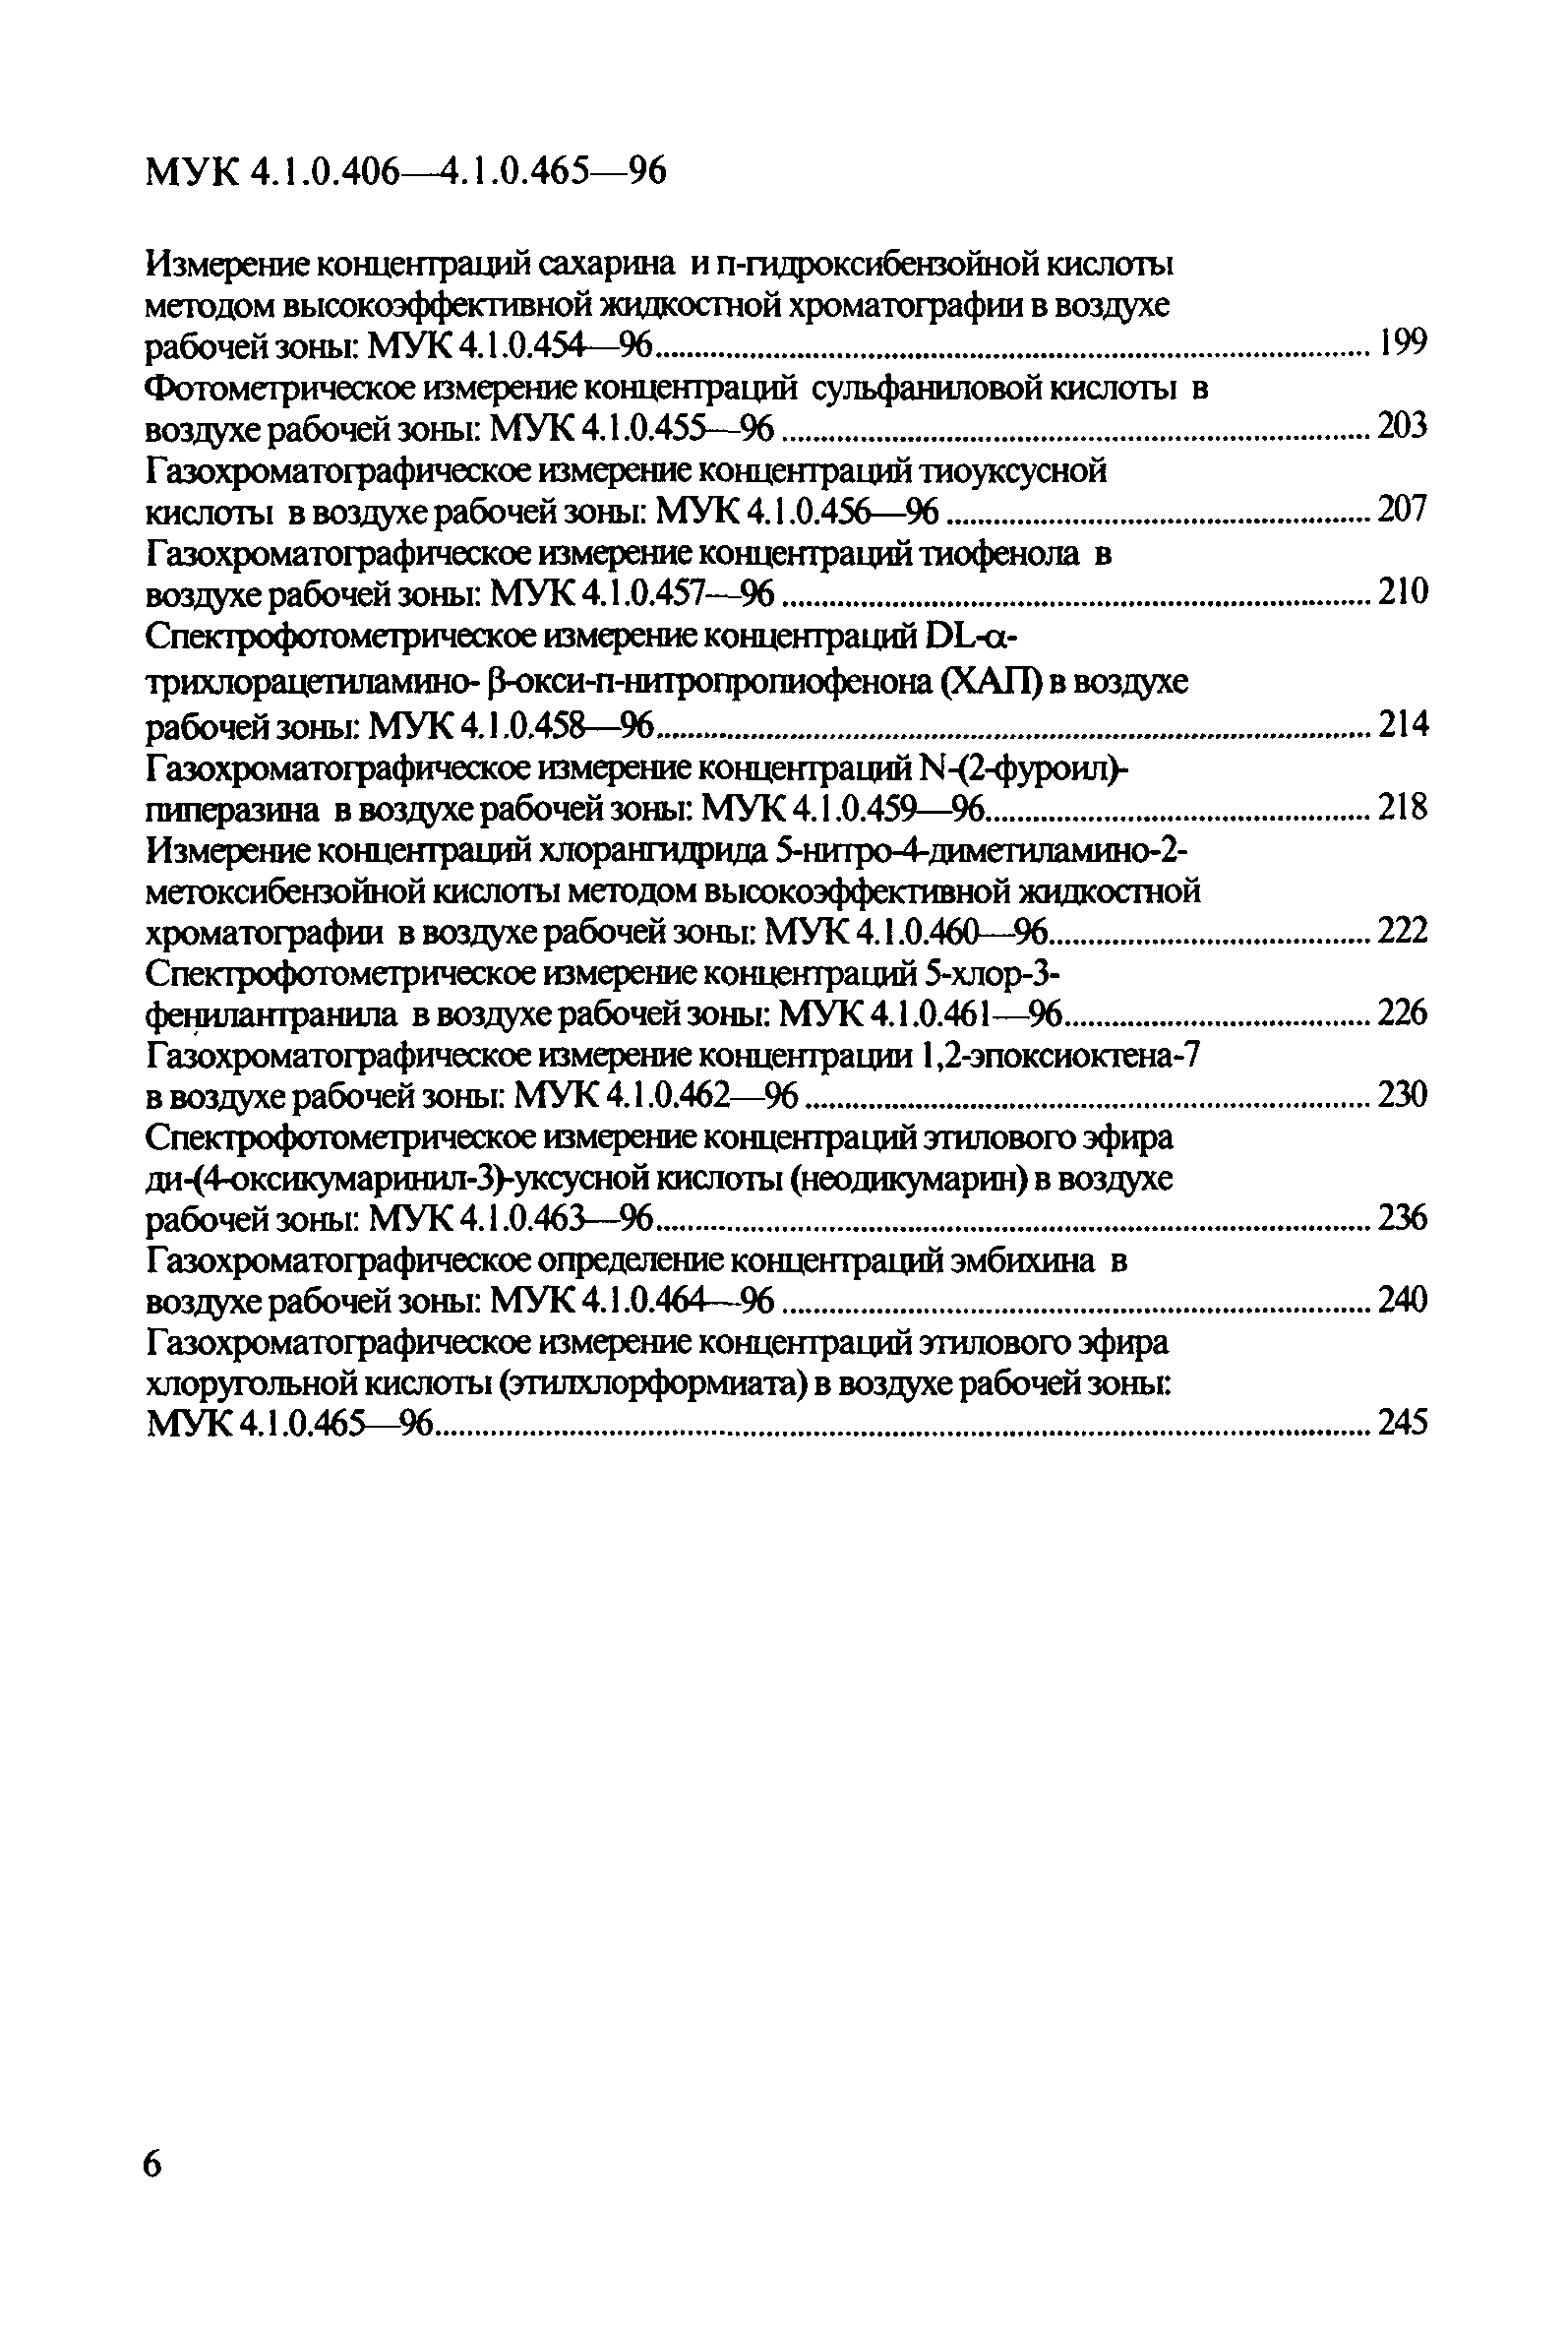 МУК 4.1.0.420-96